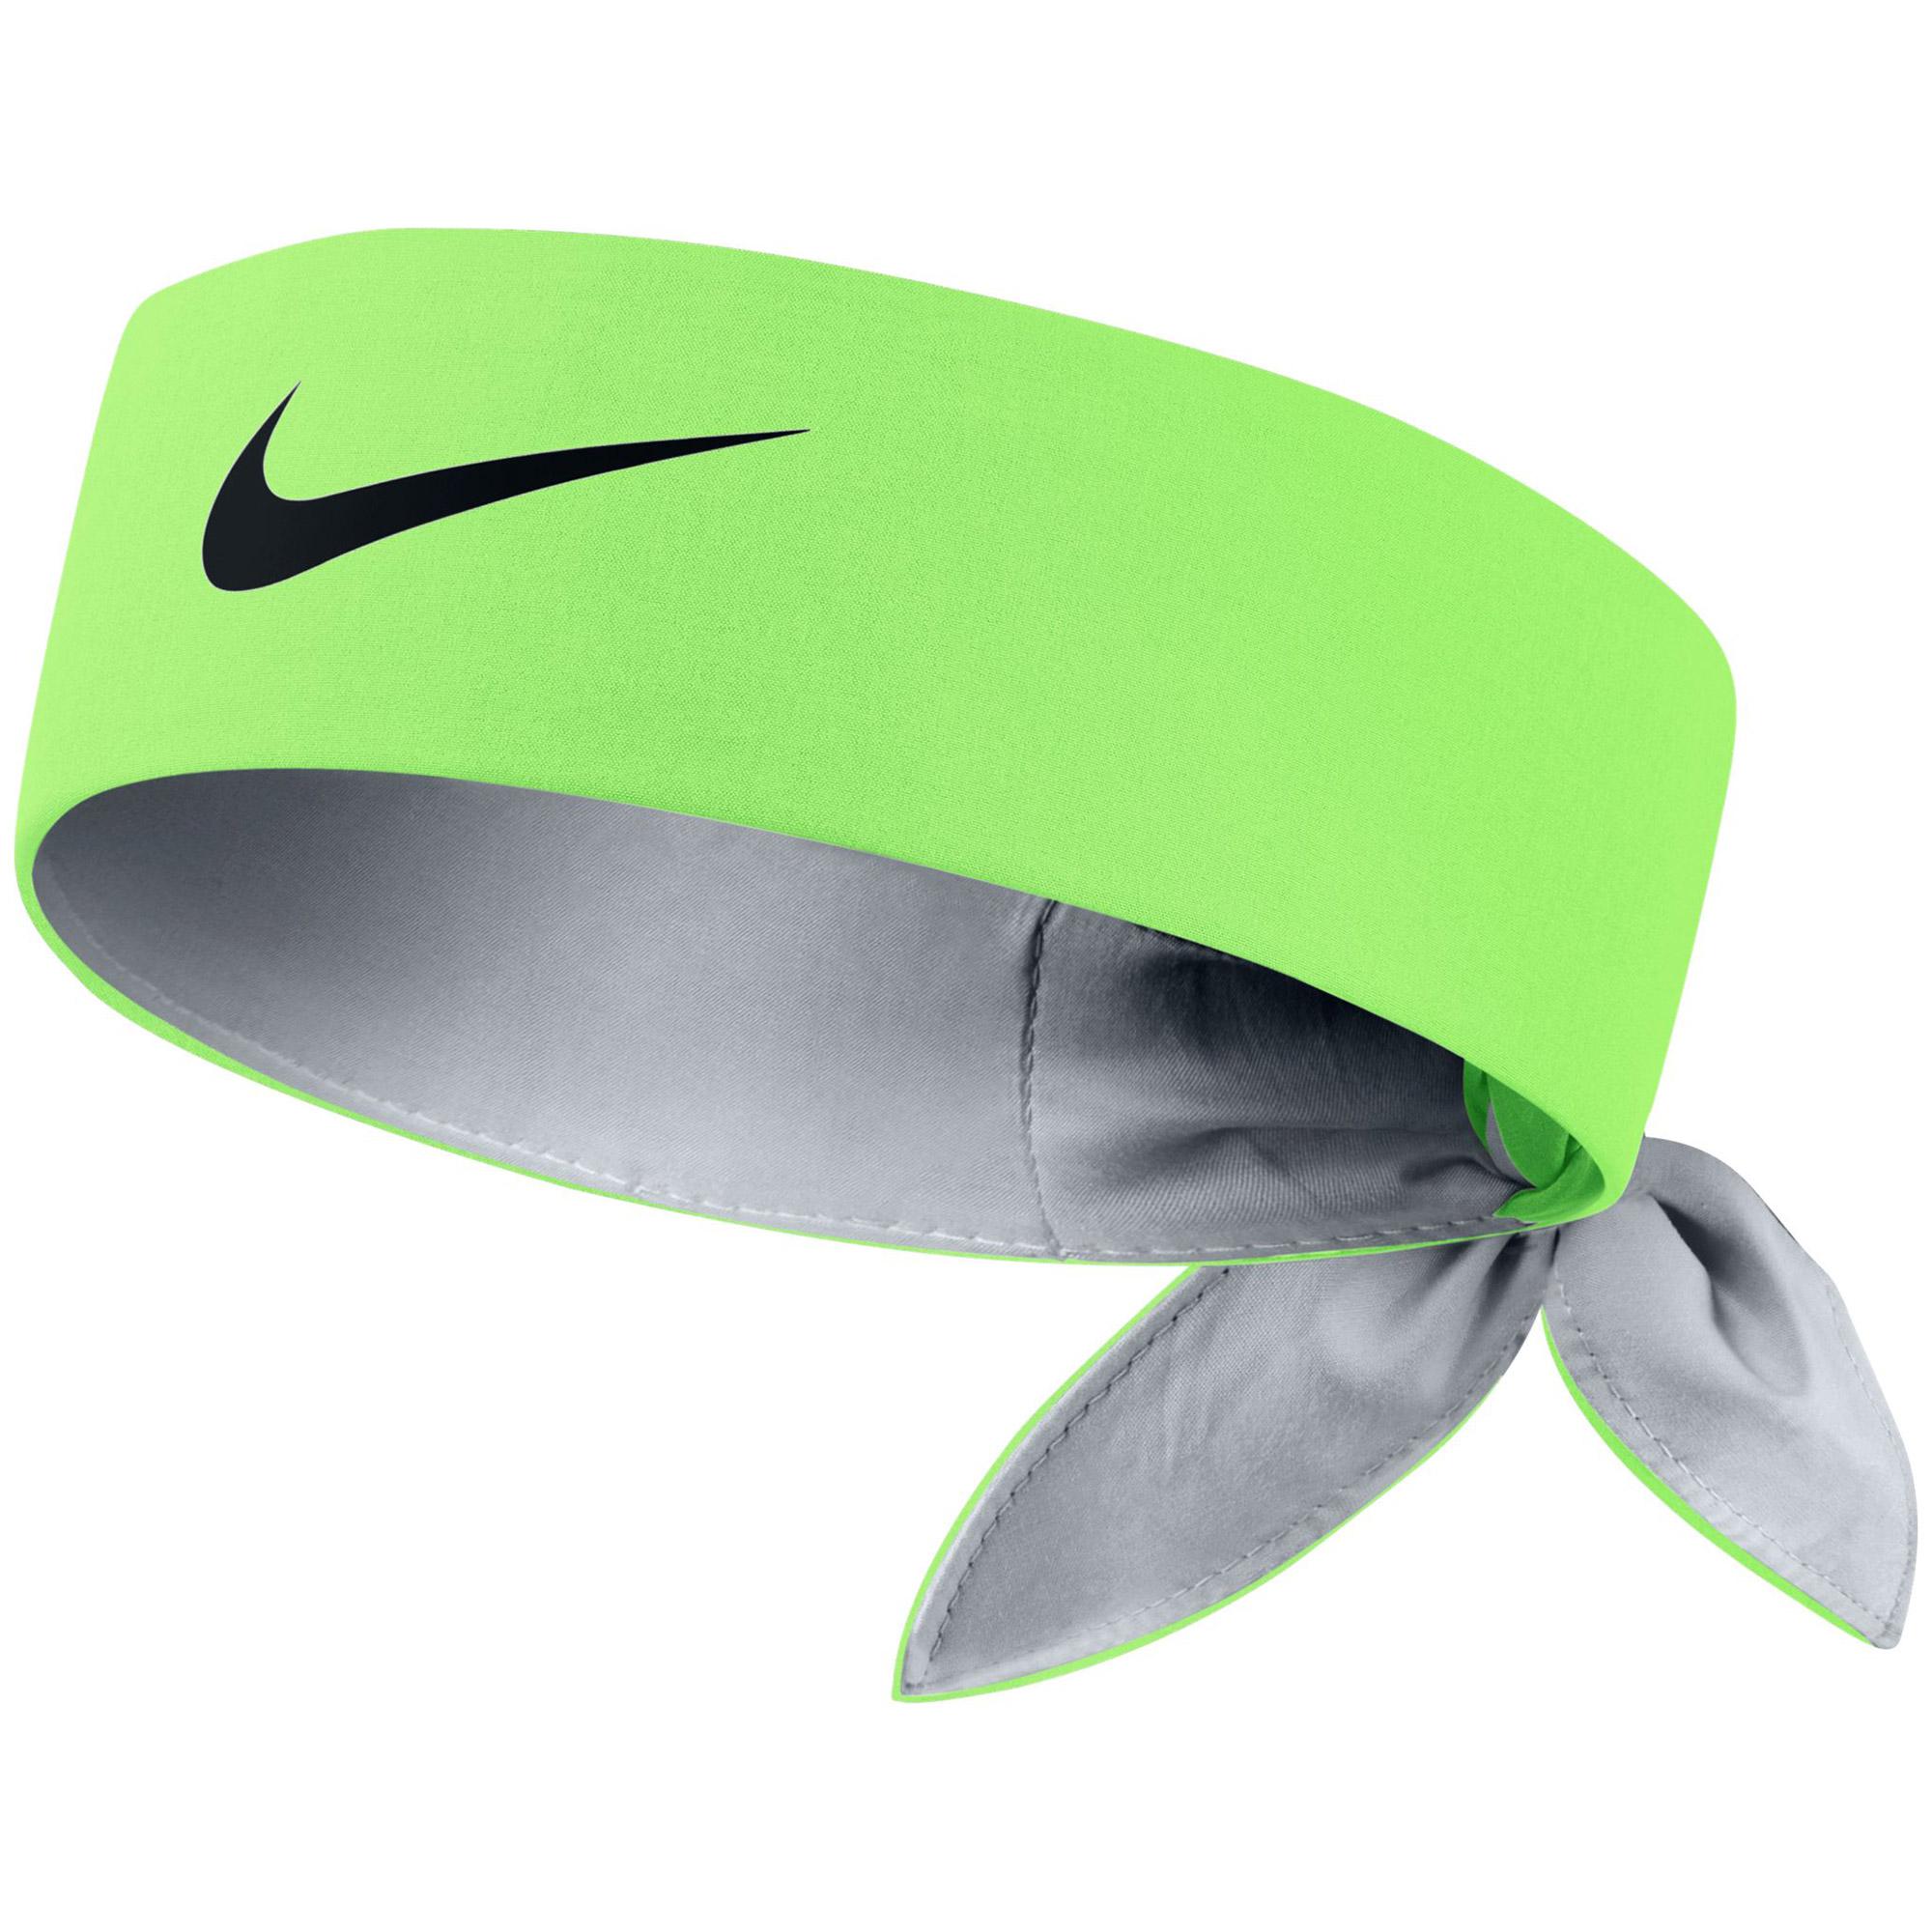 Nike Tennis Headband - Ghost Green - Tennisnuts.com